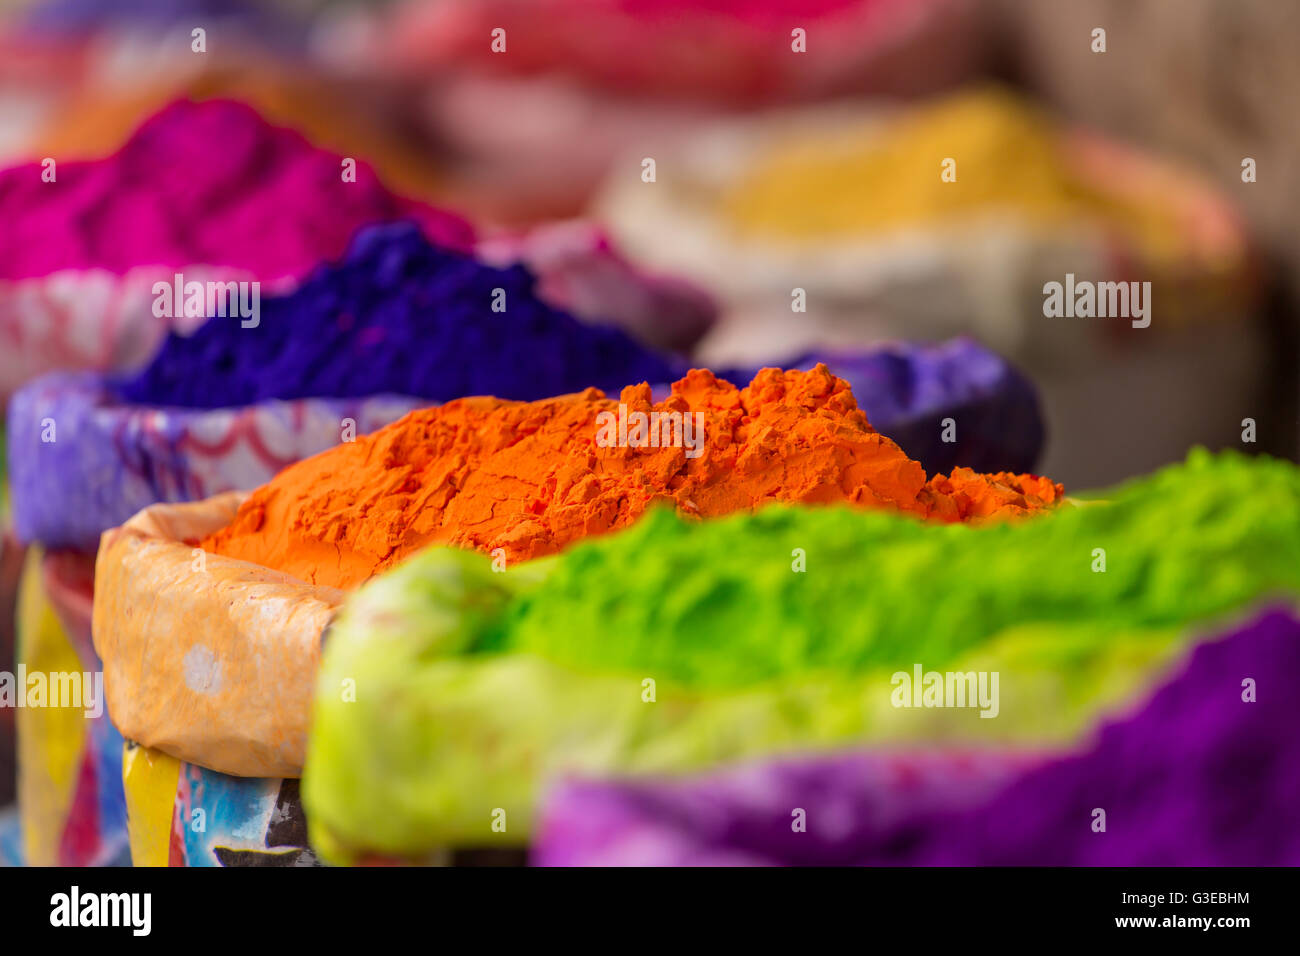 Bunter Haufen von pulverförmigen Farbstoffe für Holi-Fest in Indien Stockfoto